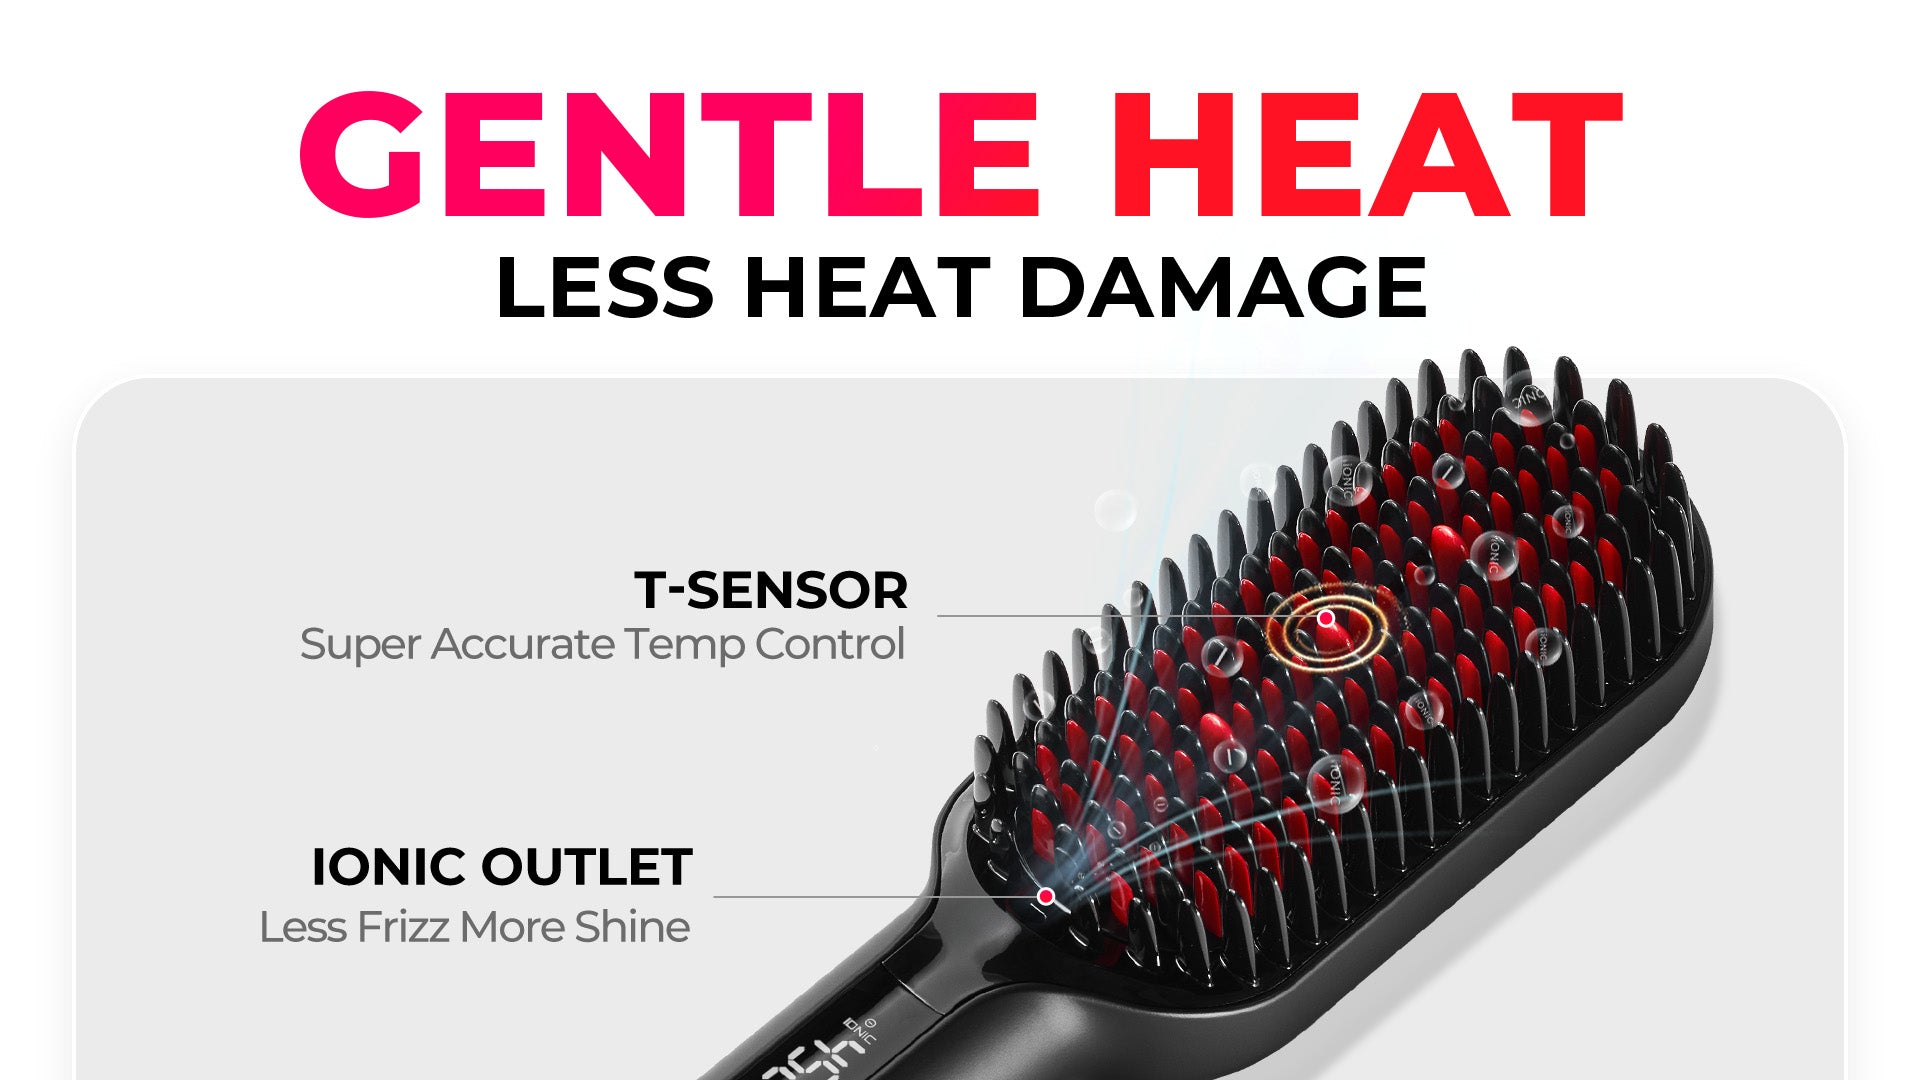 Gentle Heat Less Heat Damage